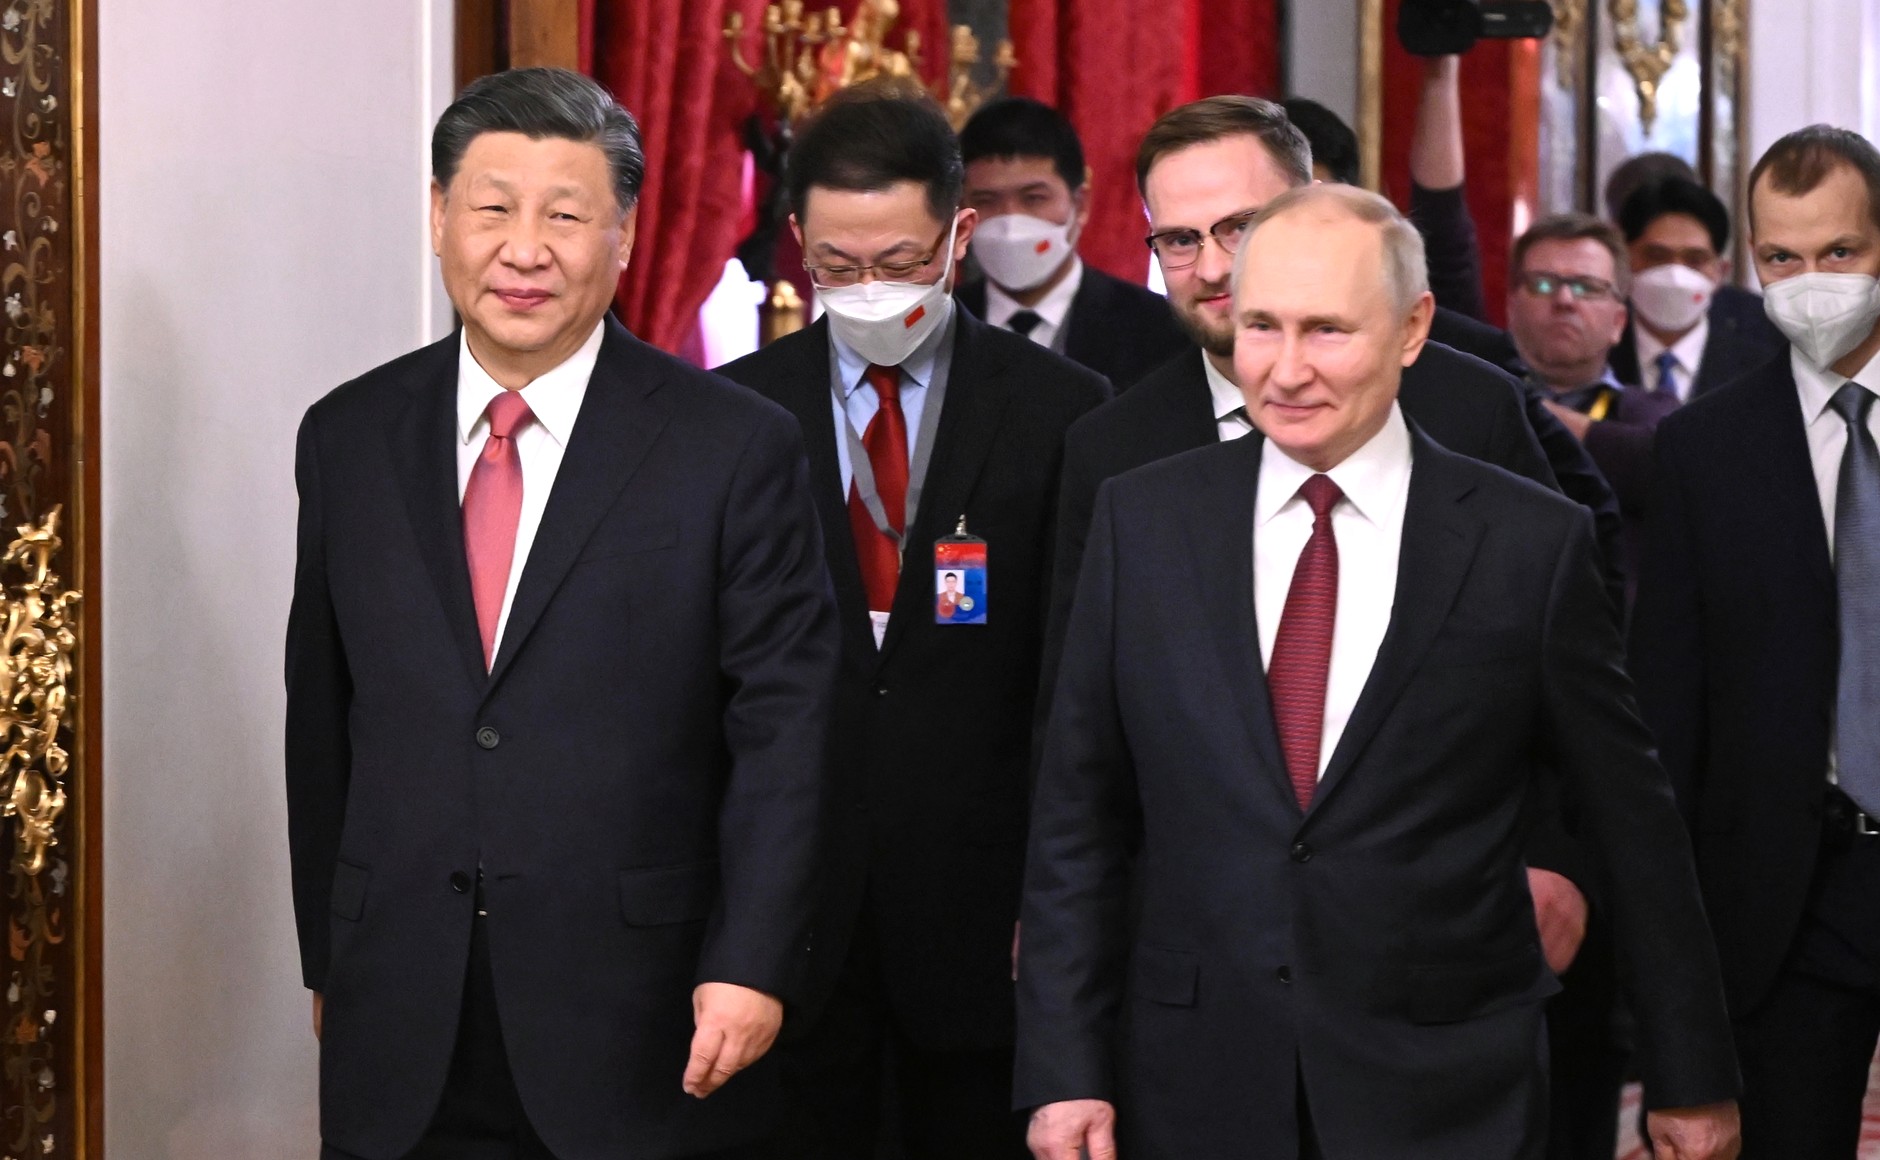 «Ρωσία και Κίνα είναι σταθερά στη σωστή πλευρά της ιστορίας» δήλωσε ο Κινέζος πρόεδρος αφού είδε τον Πούτιν